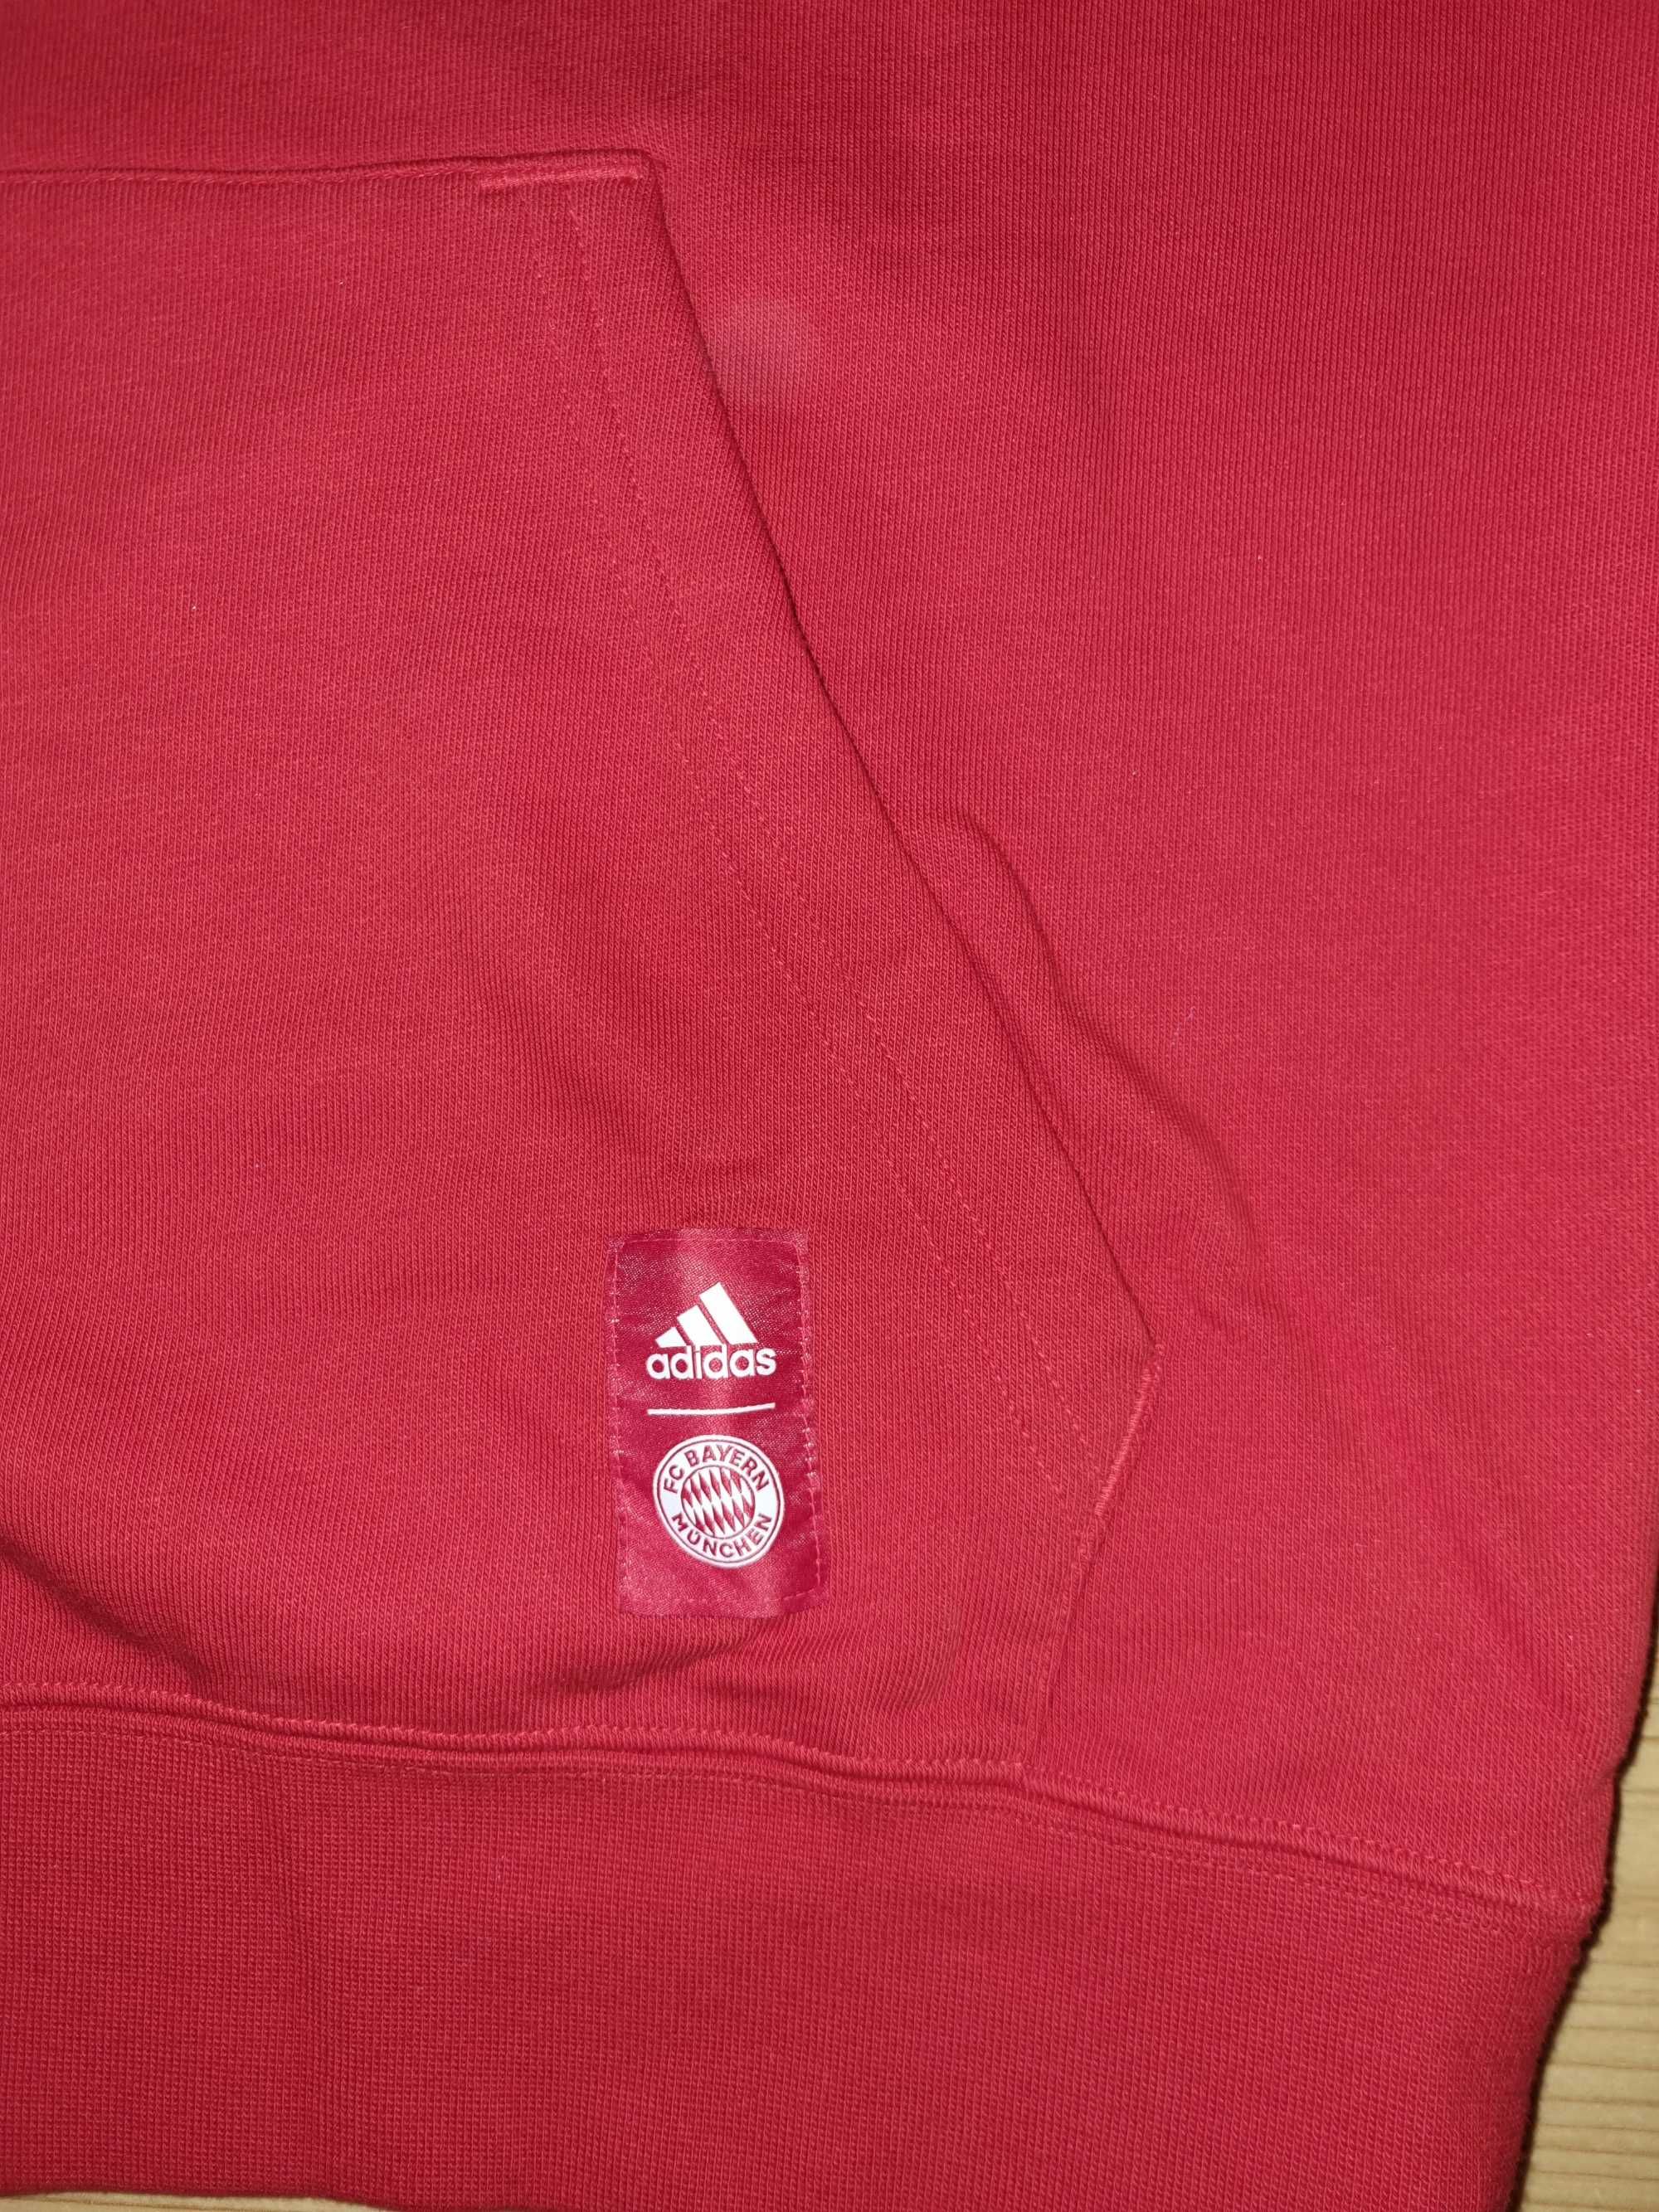 Adidas Nowa Oryginalna Bluza z Kapturem Bayern Monachium r. M GR0681